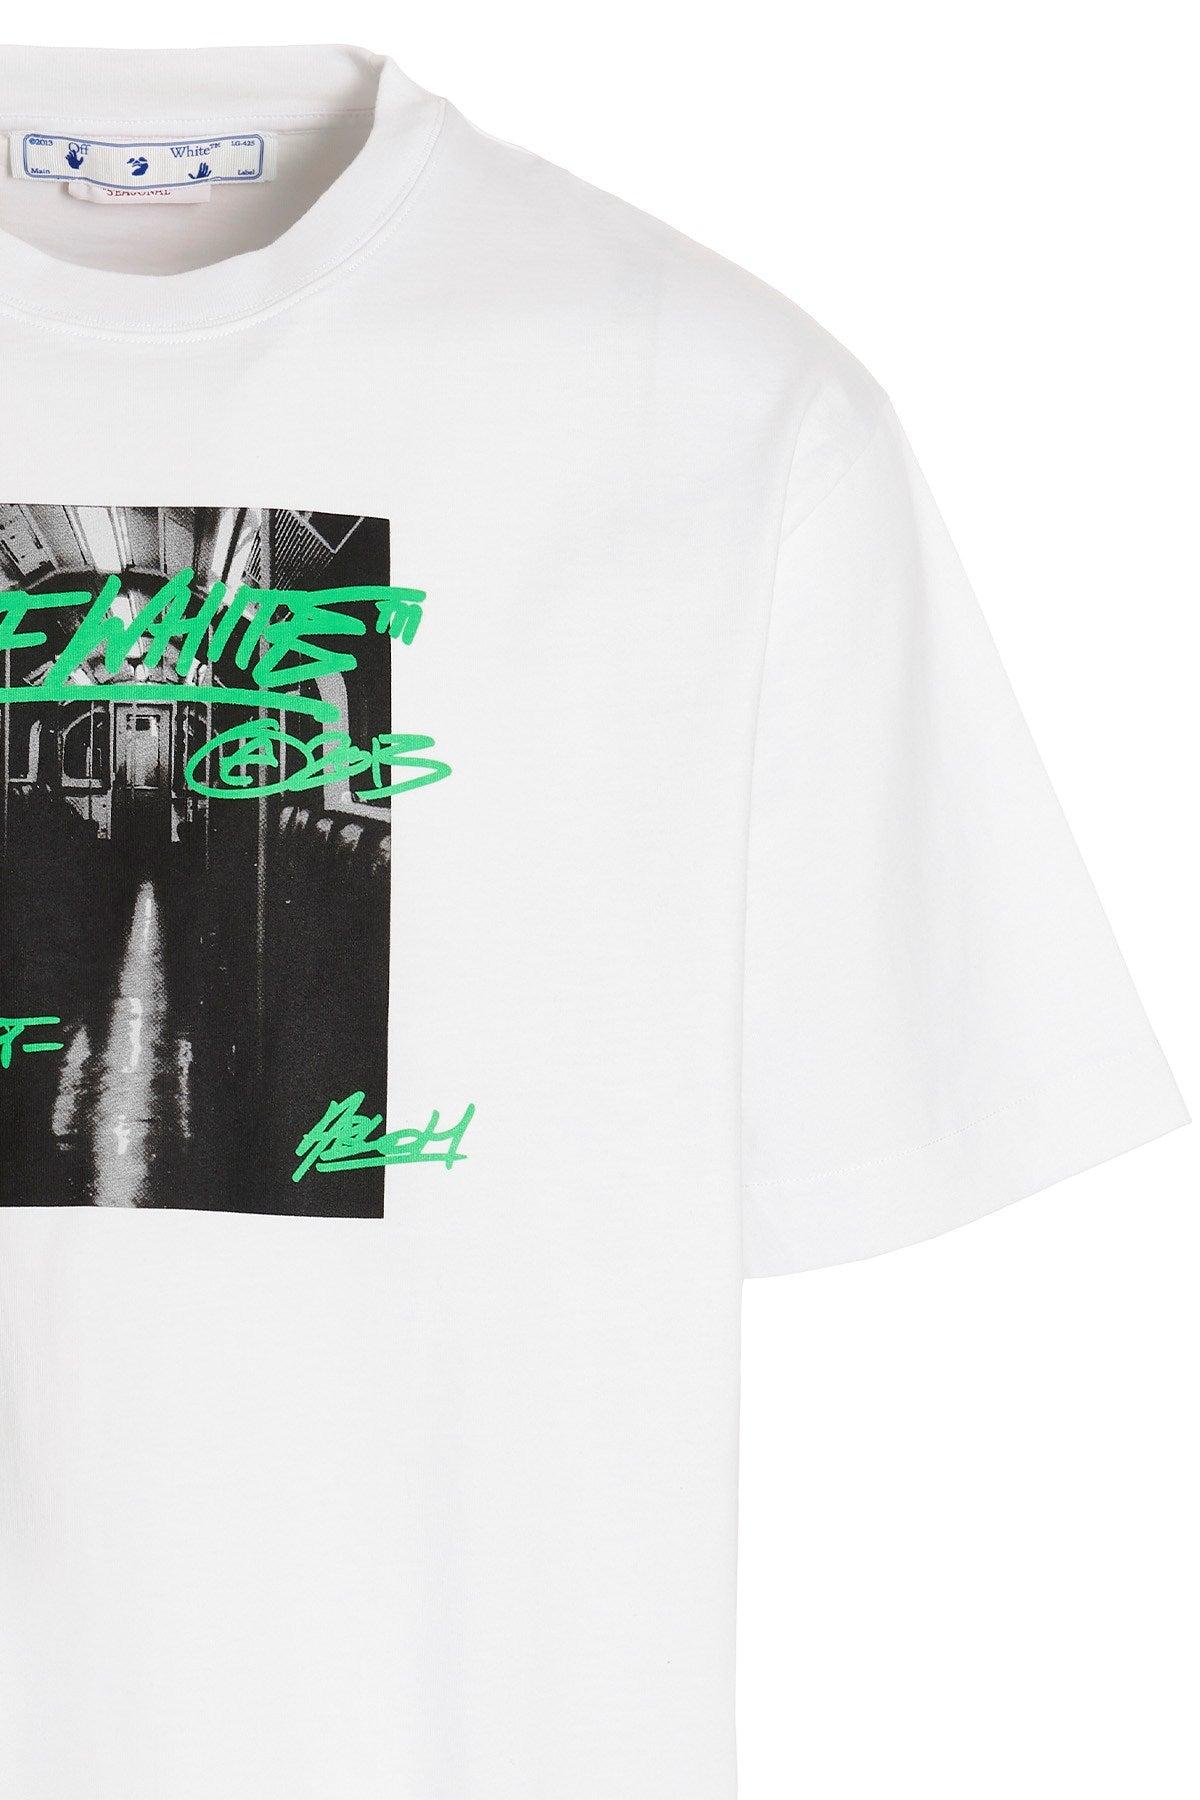 Off-White c/o Virgil Abloh 'metro Type' T-shirt in Green for Men